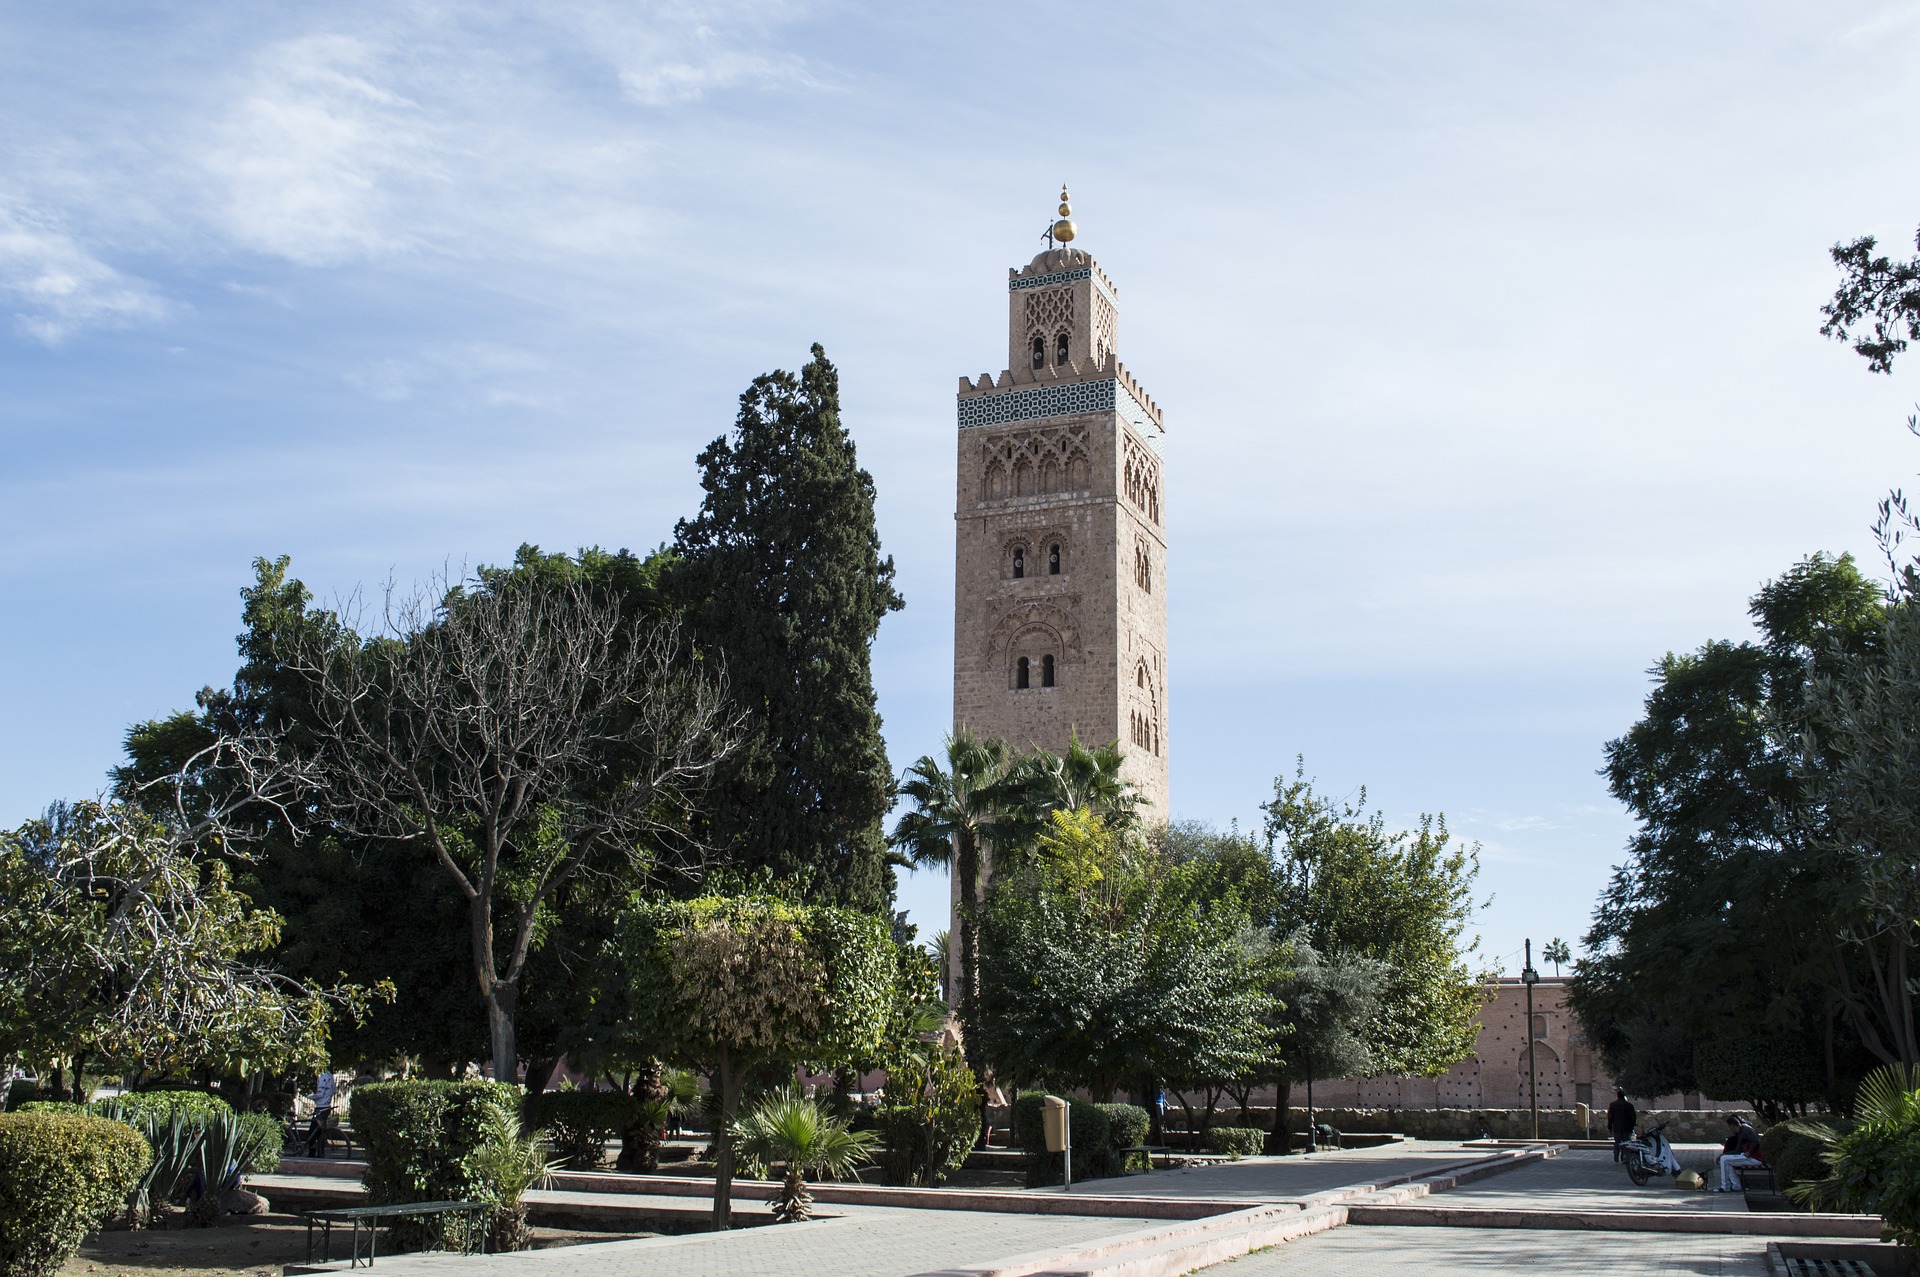 Day 04: Marrakech